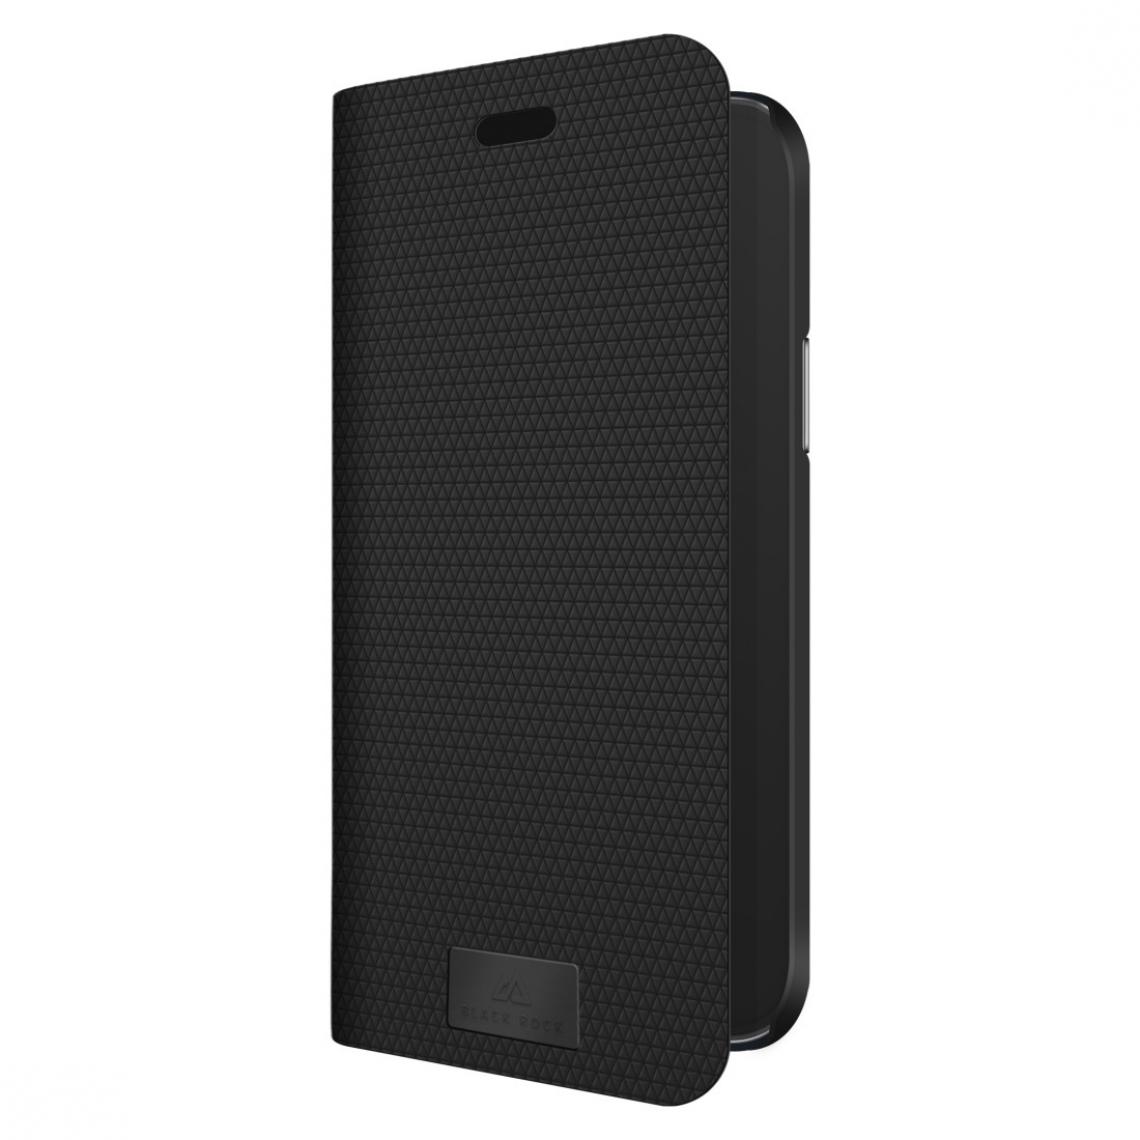 Black Rock - Etui portefeuille "The Standard" pour iPhone 12 mini, noir - Coque, étui smartphone